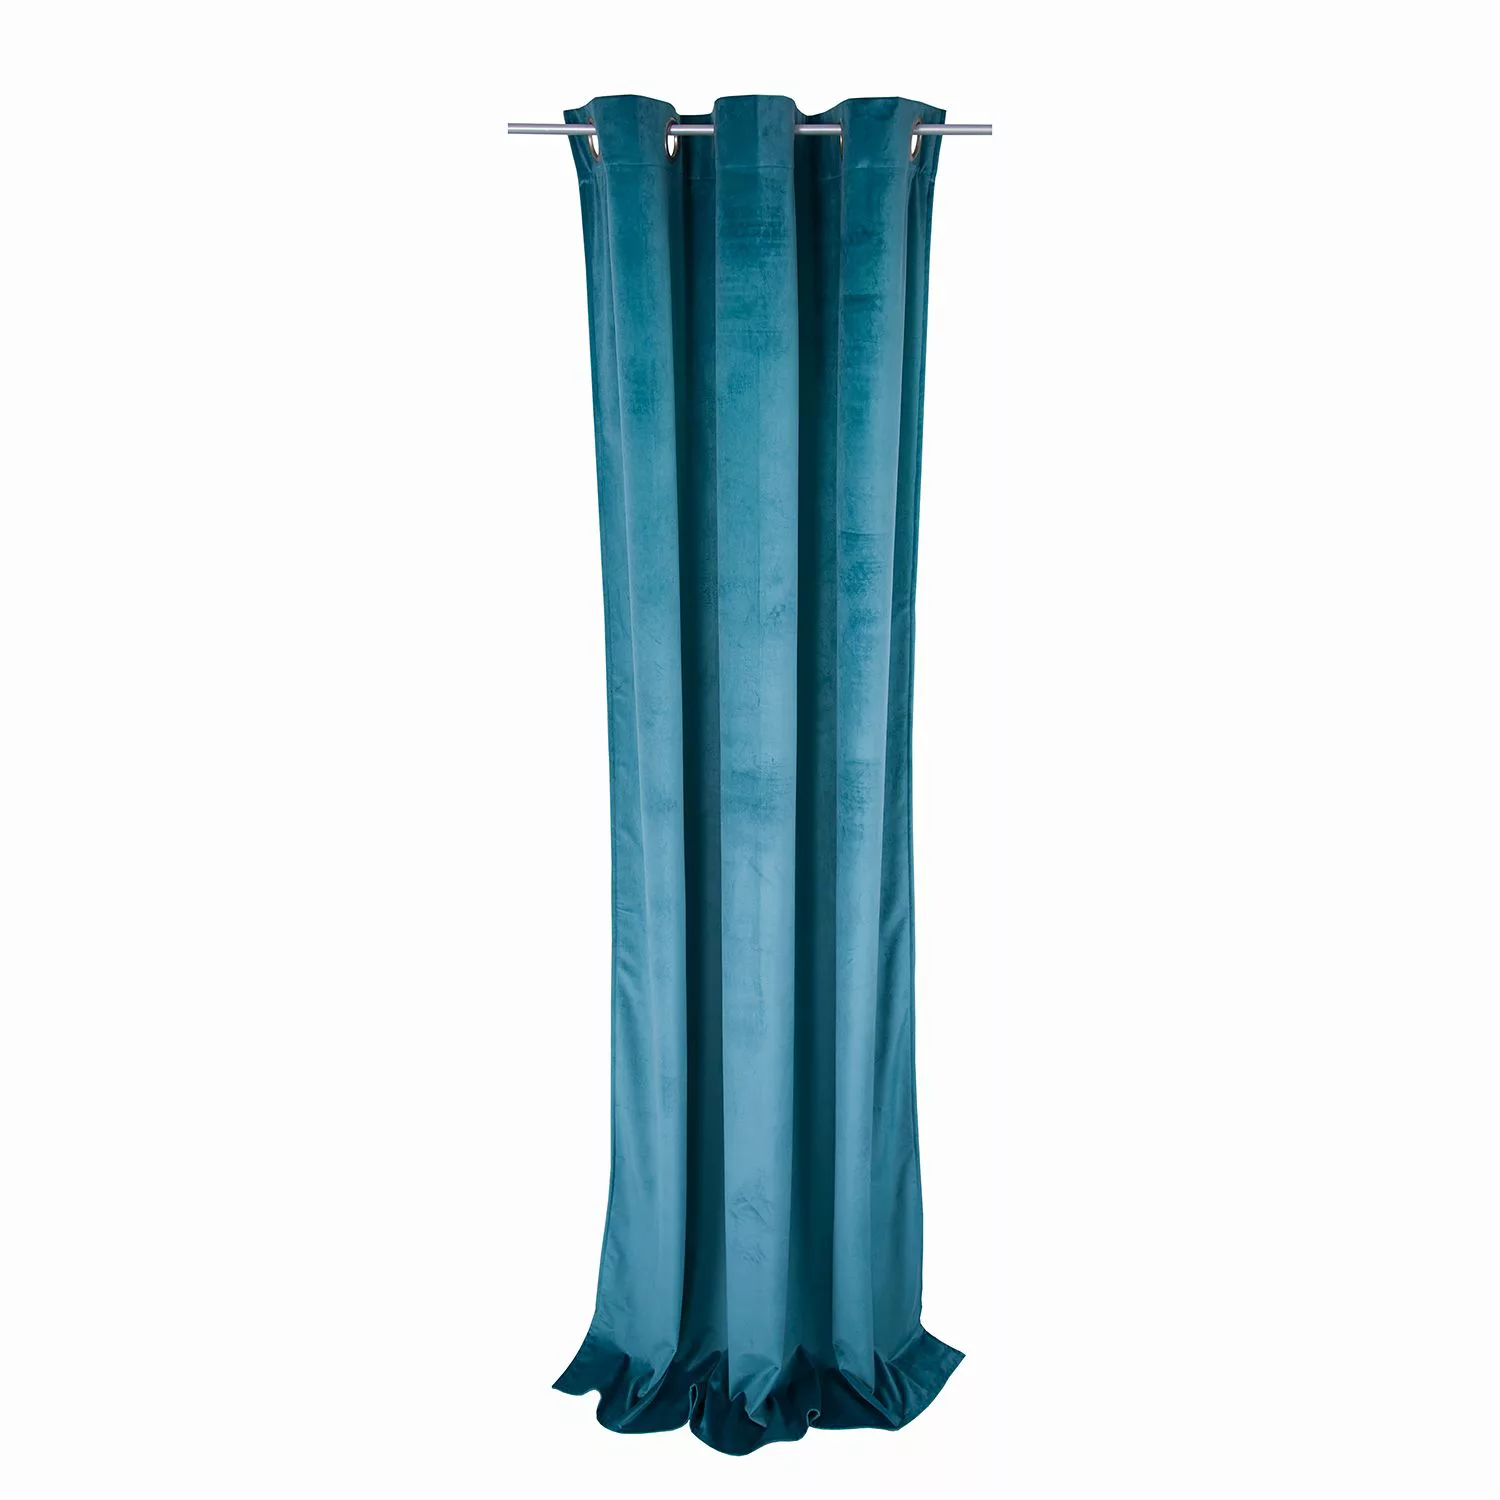 Ösenschal French Velvet • 135 x 245cm • UNI Design - rot günstig online kaufen